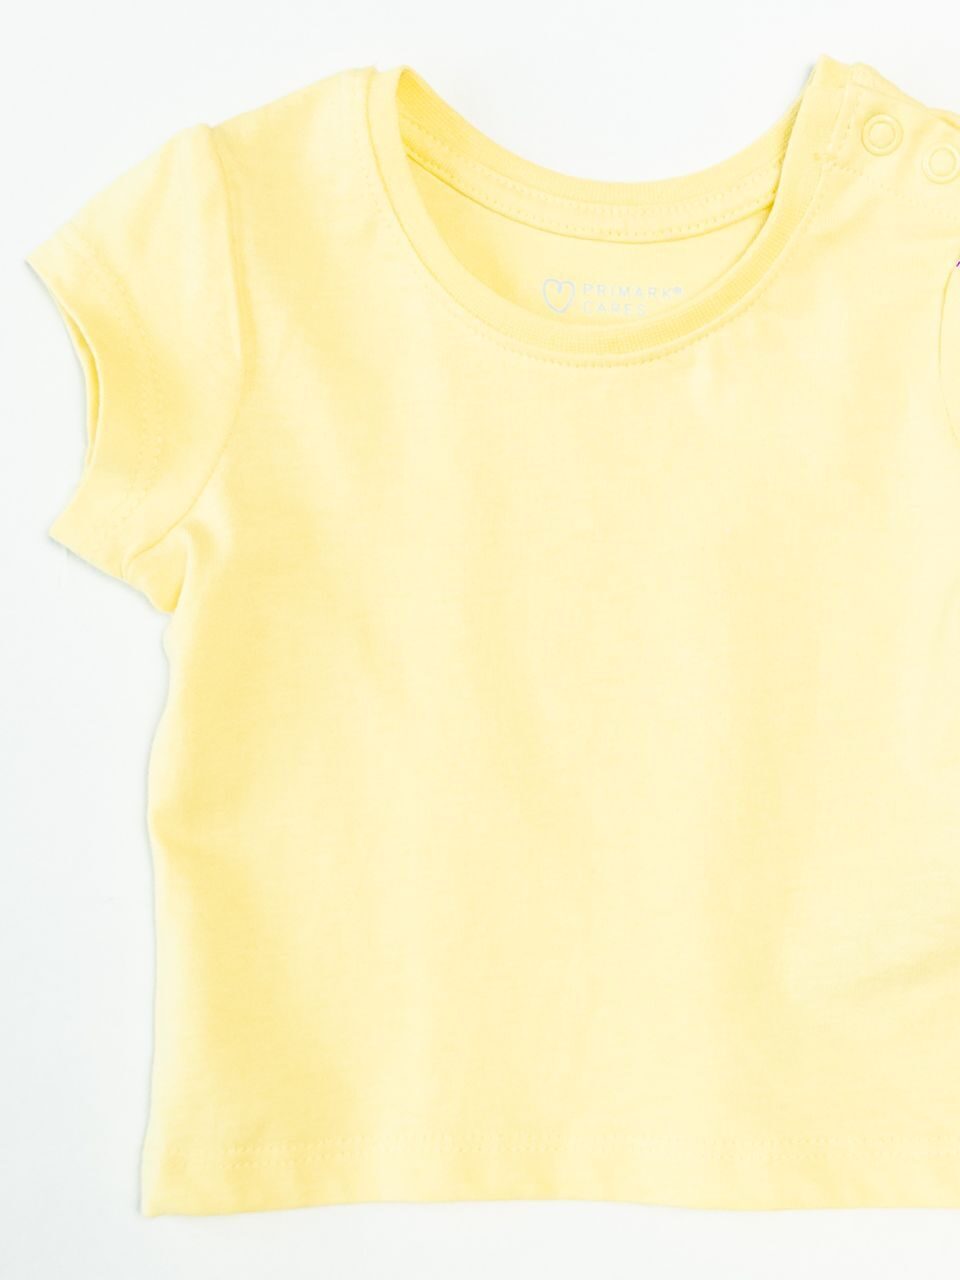 Футболка хлопковая для девочки цвет желтый   рост 62 см Primark